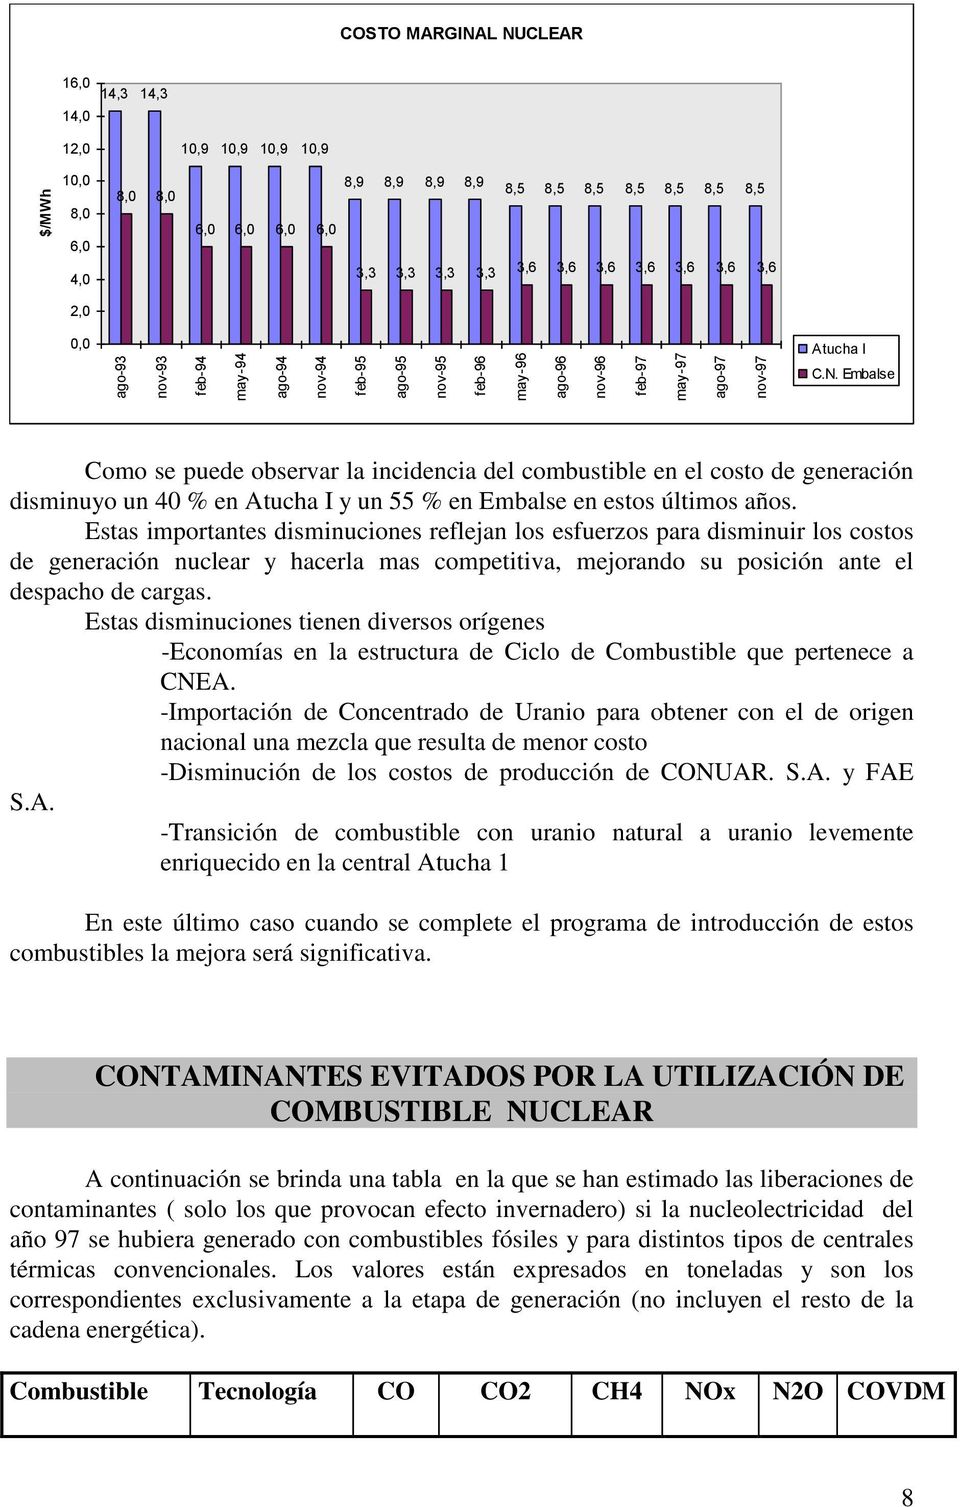 Embalse Como se puede observar la incidencia del combustible en el costo de generación disminuyo un 40 % en Atucha I y un 55 % en Embalse en estos últimos años.